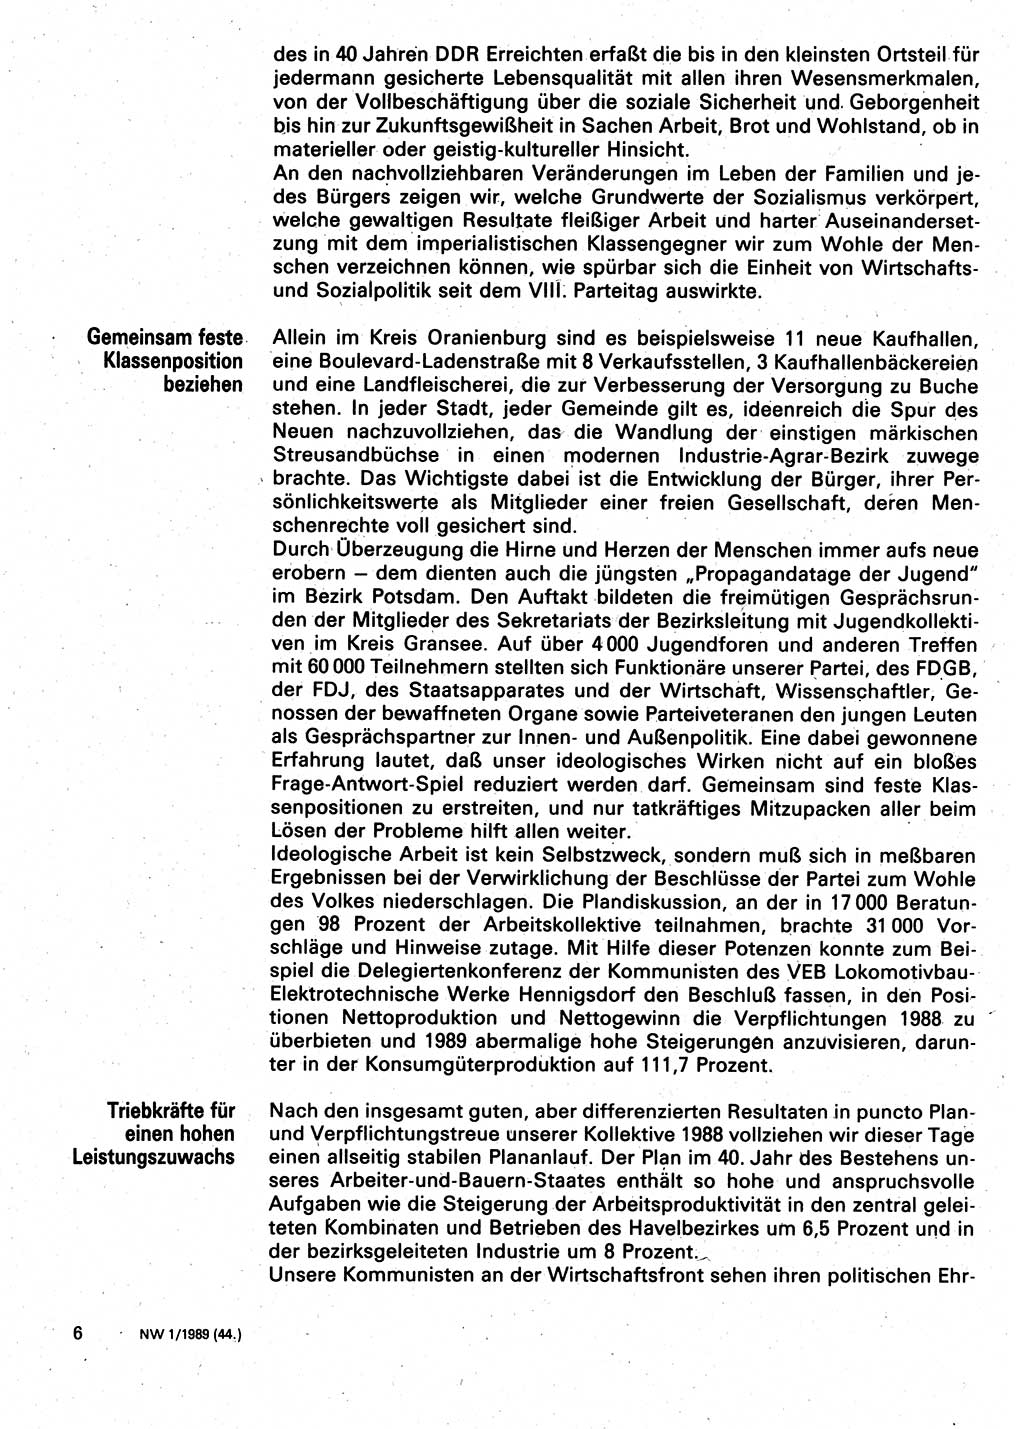 Neuer Weg (NW), Organ des Zentralkomitees (ZK) der SED (Sozialistische Einheitspartei Deutschlands) für Fragen des Parteilebens, 44. Jahrgang [Deutsche Demokratische Republik (DDR)] 1989, Seite 6 (NW ZK SED DDR 1989, S. 6)